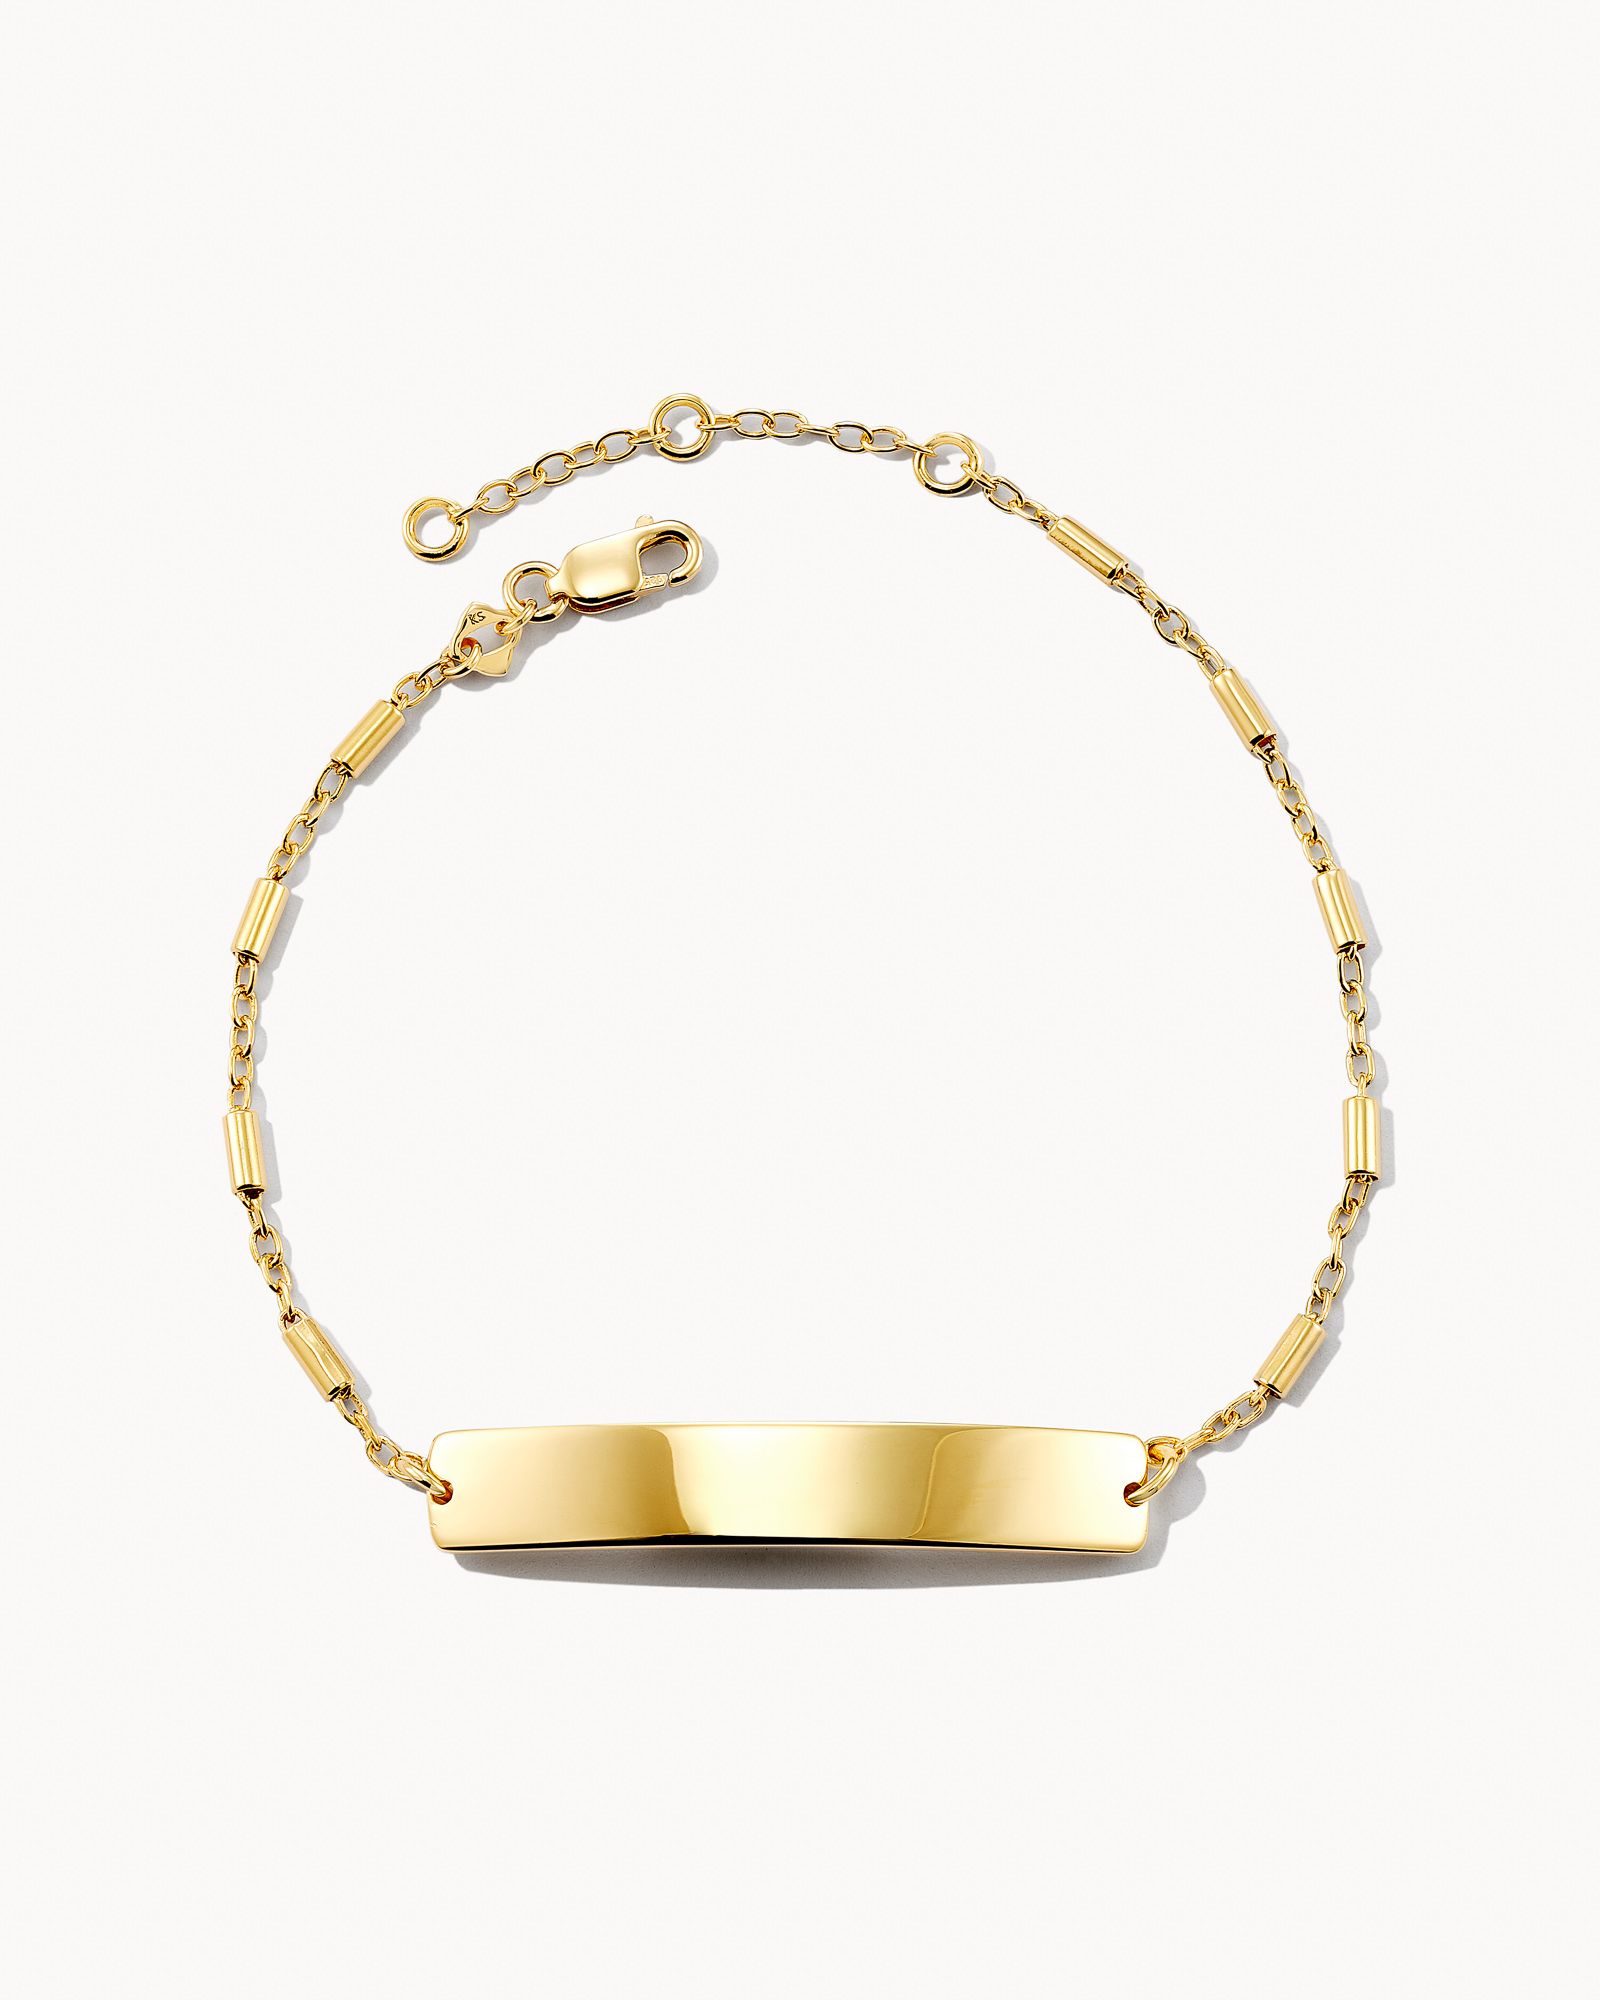 Allison Delicate Bracelet in 18k Yellow Gold Vermeil | Kendra Scott | Kendra Scott